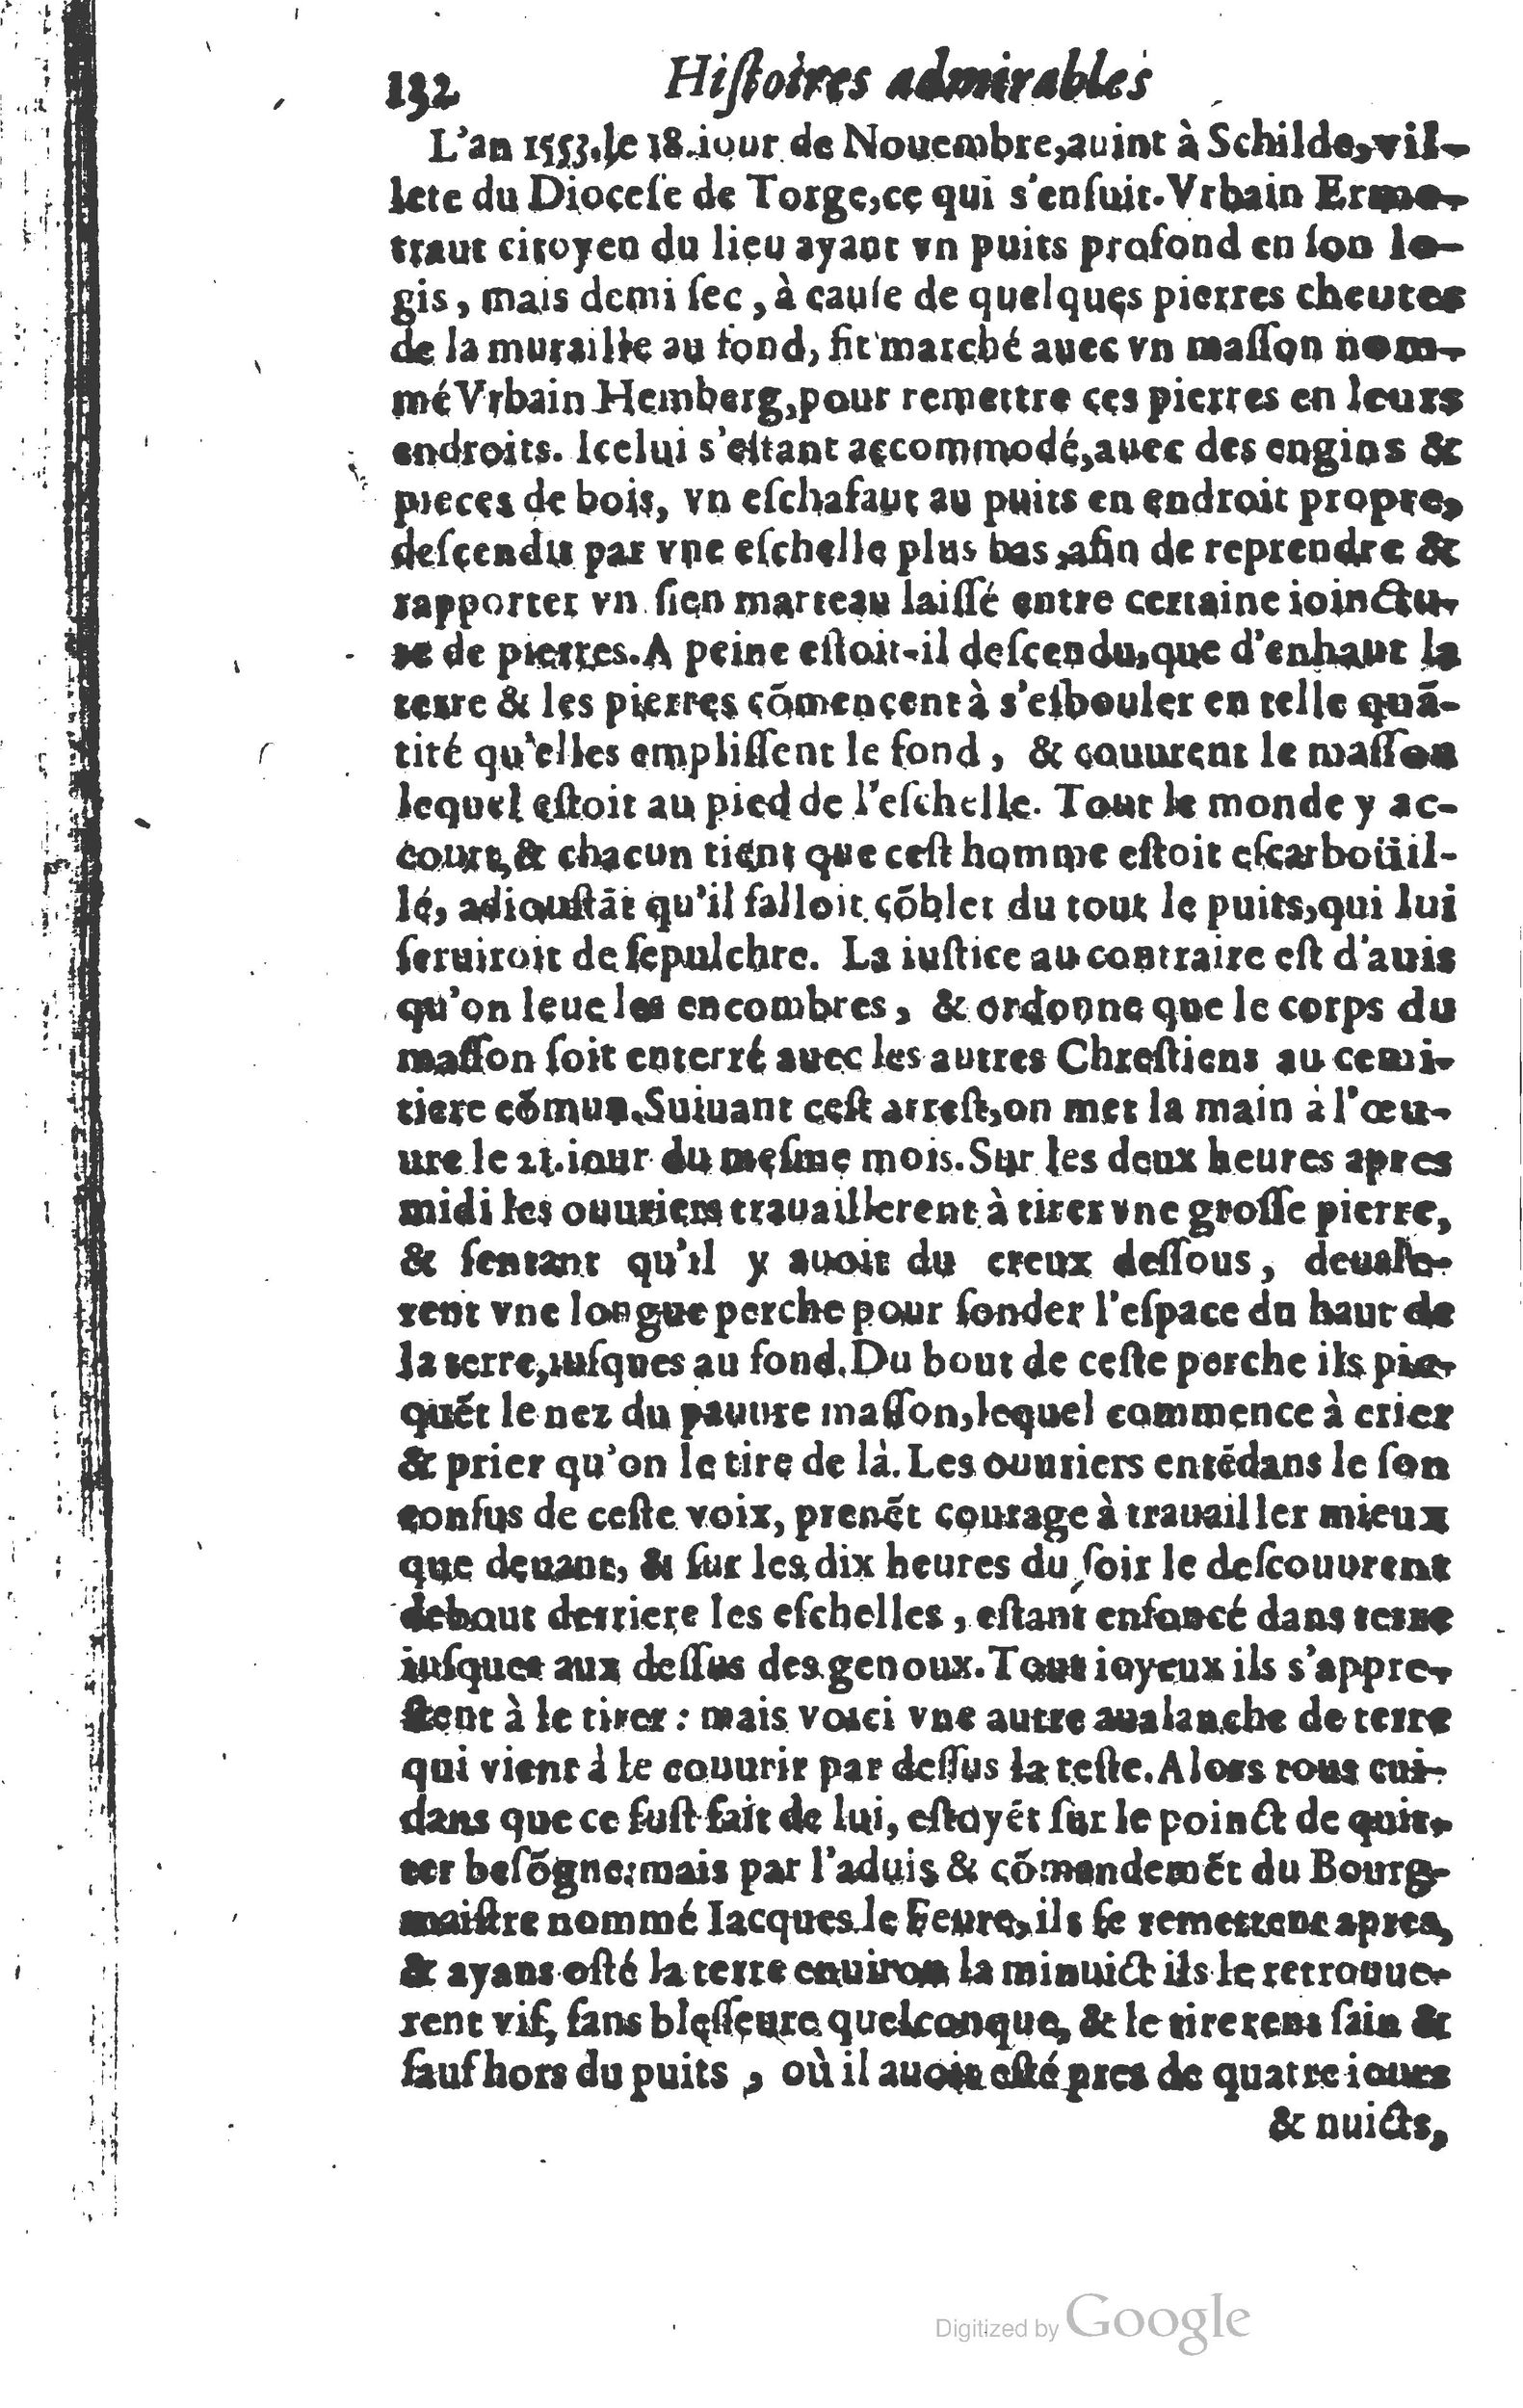 1610 Trésor d’histoires admirables et mémorables de nostre temps Marceau Princeton_Page_0153.jpg